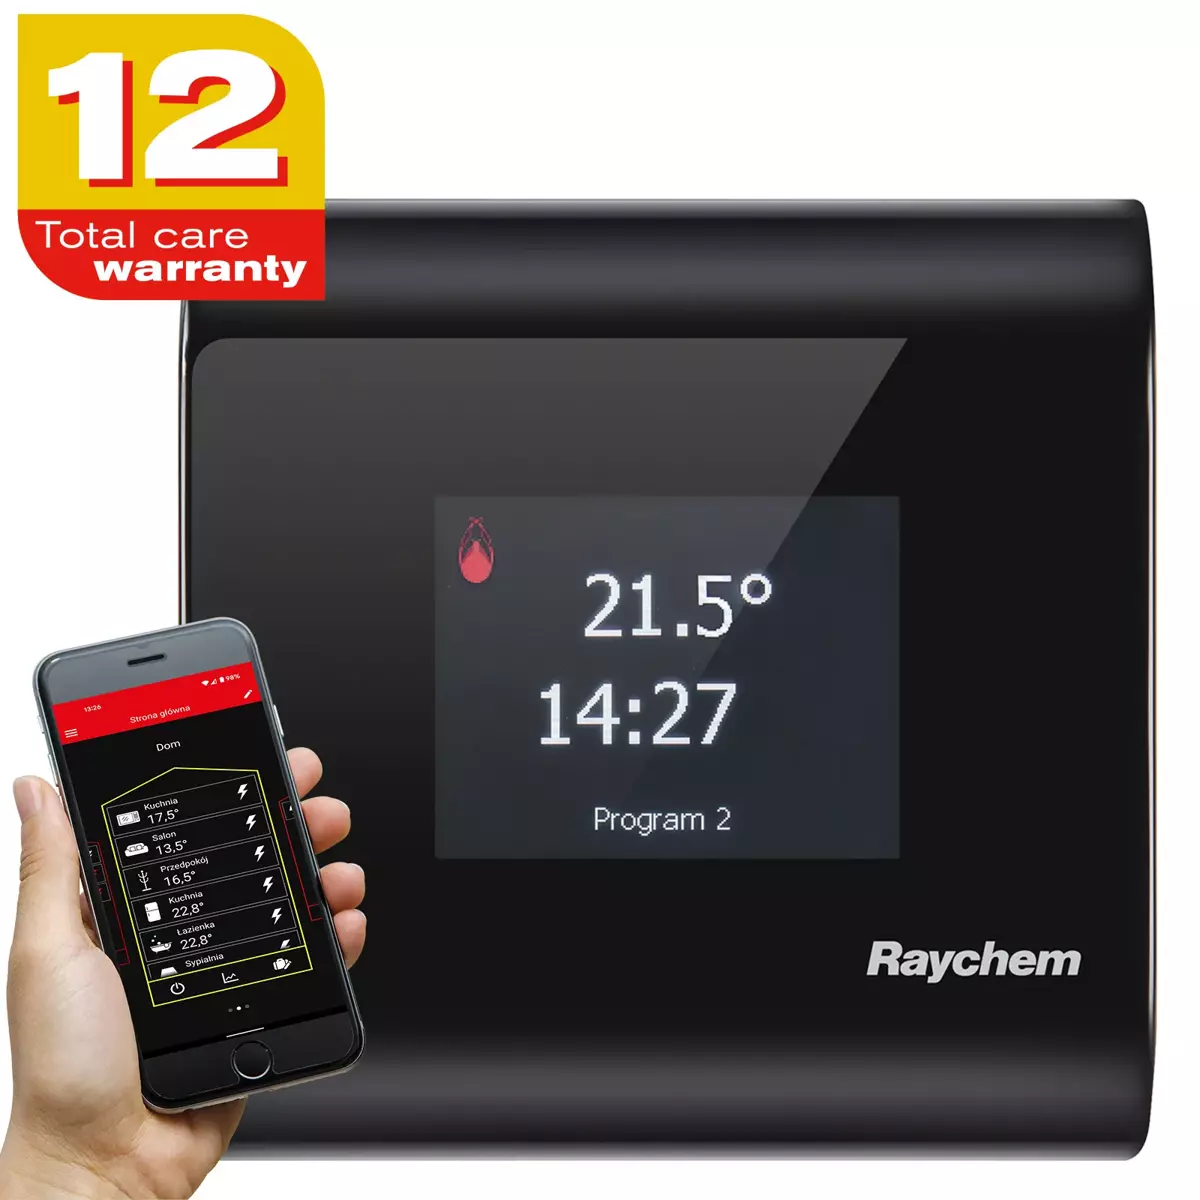 Termostat programowany z ekranem dotykowym, możliwość sterowania przez aplikację w smartfonie - RAYCHEM SENZ WIFI